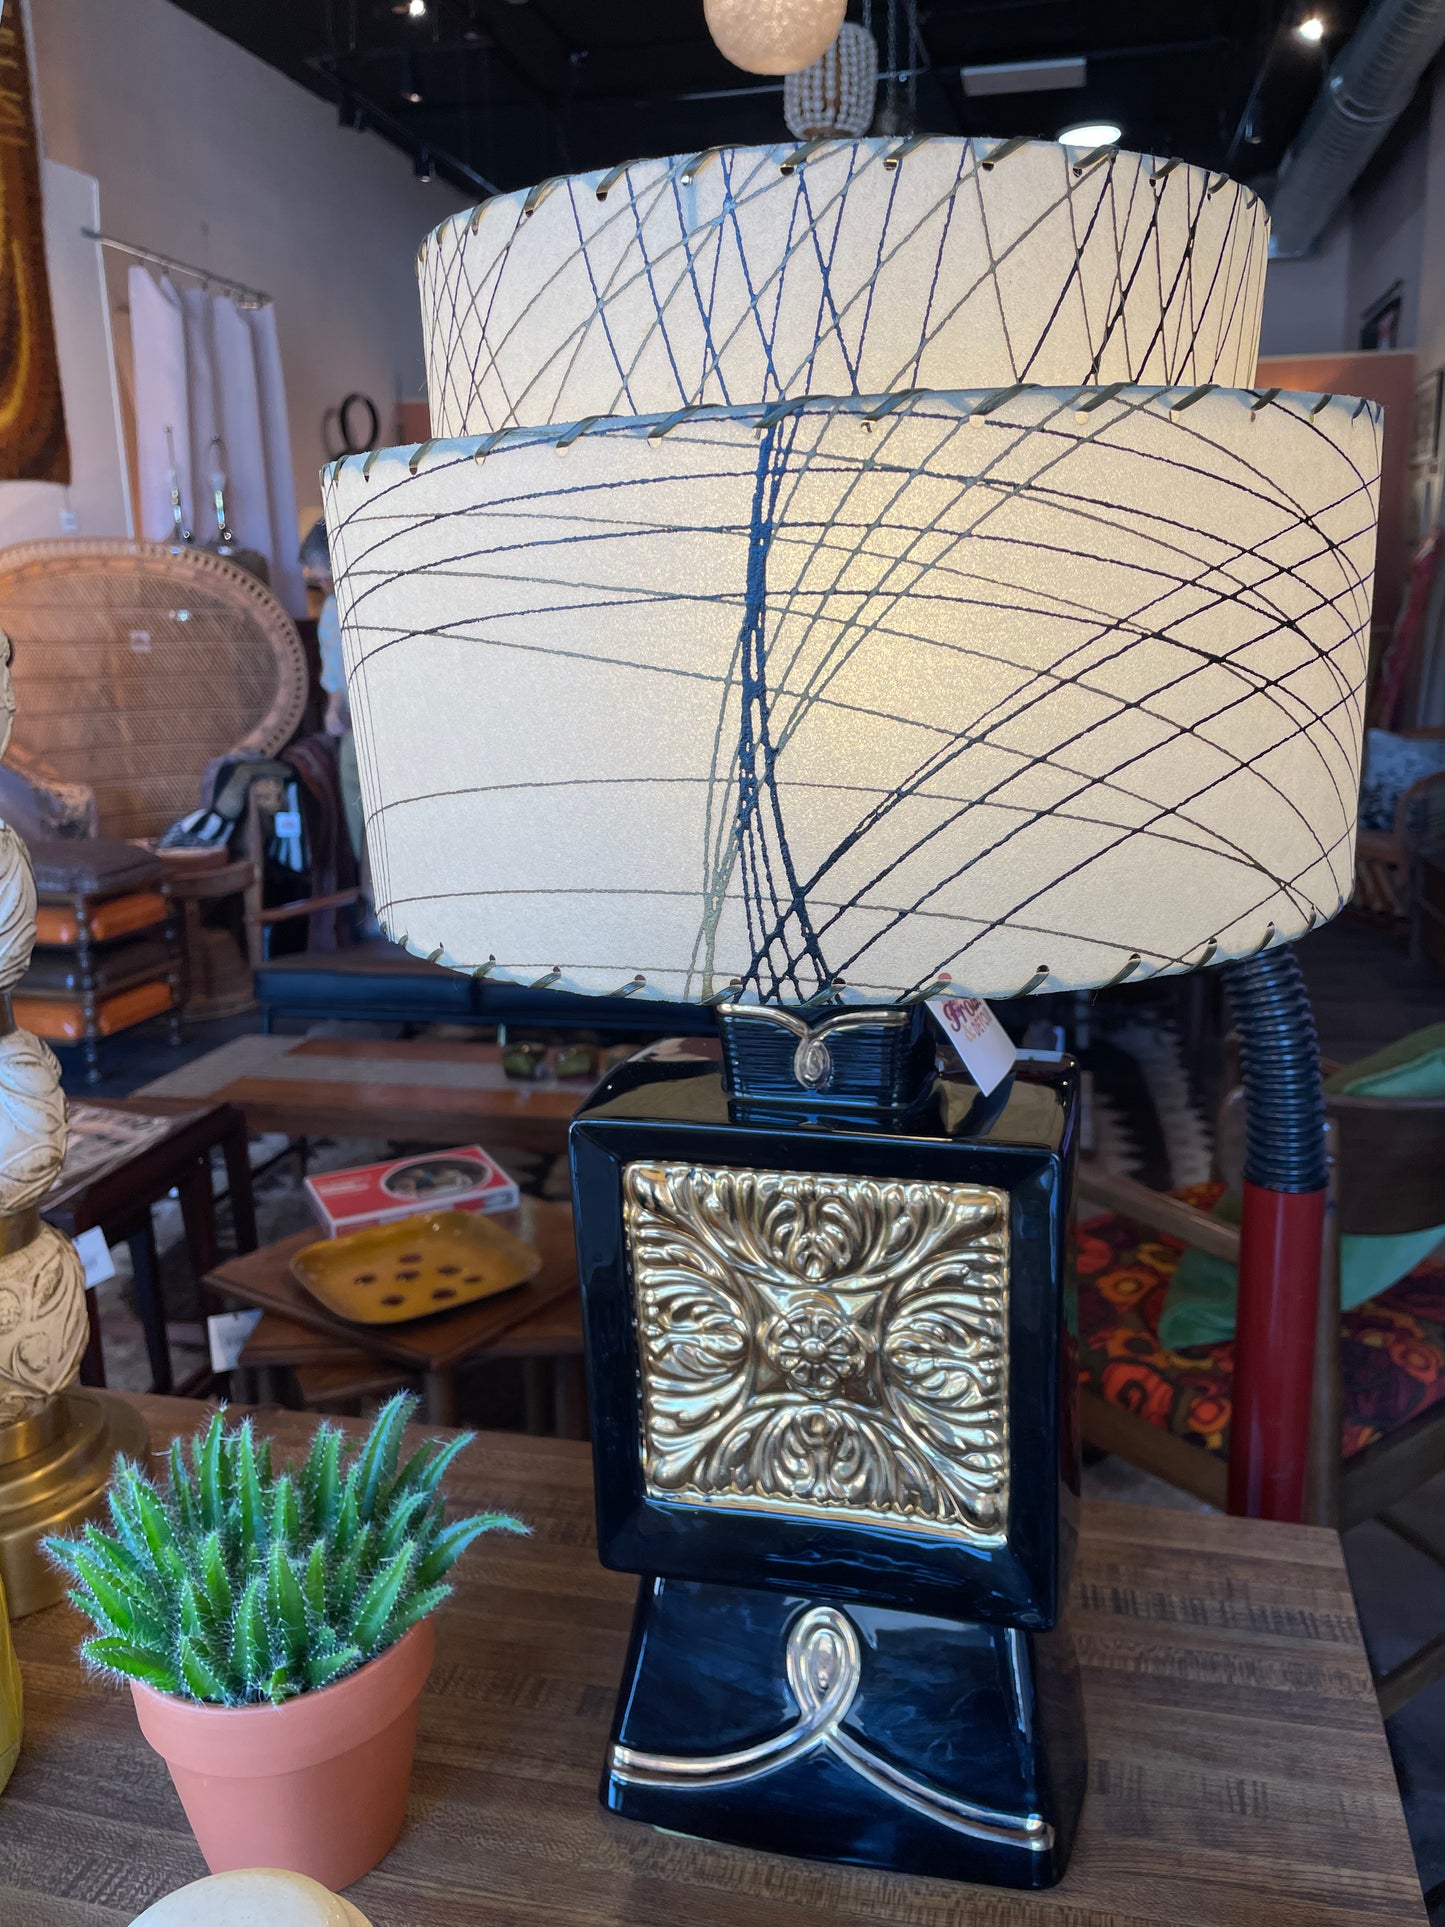 Black and Gold 1950s Ceramic Lamp with Swirled Fiberglass Shade